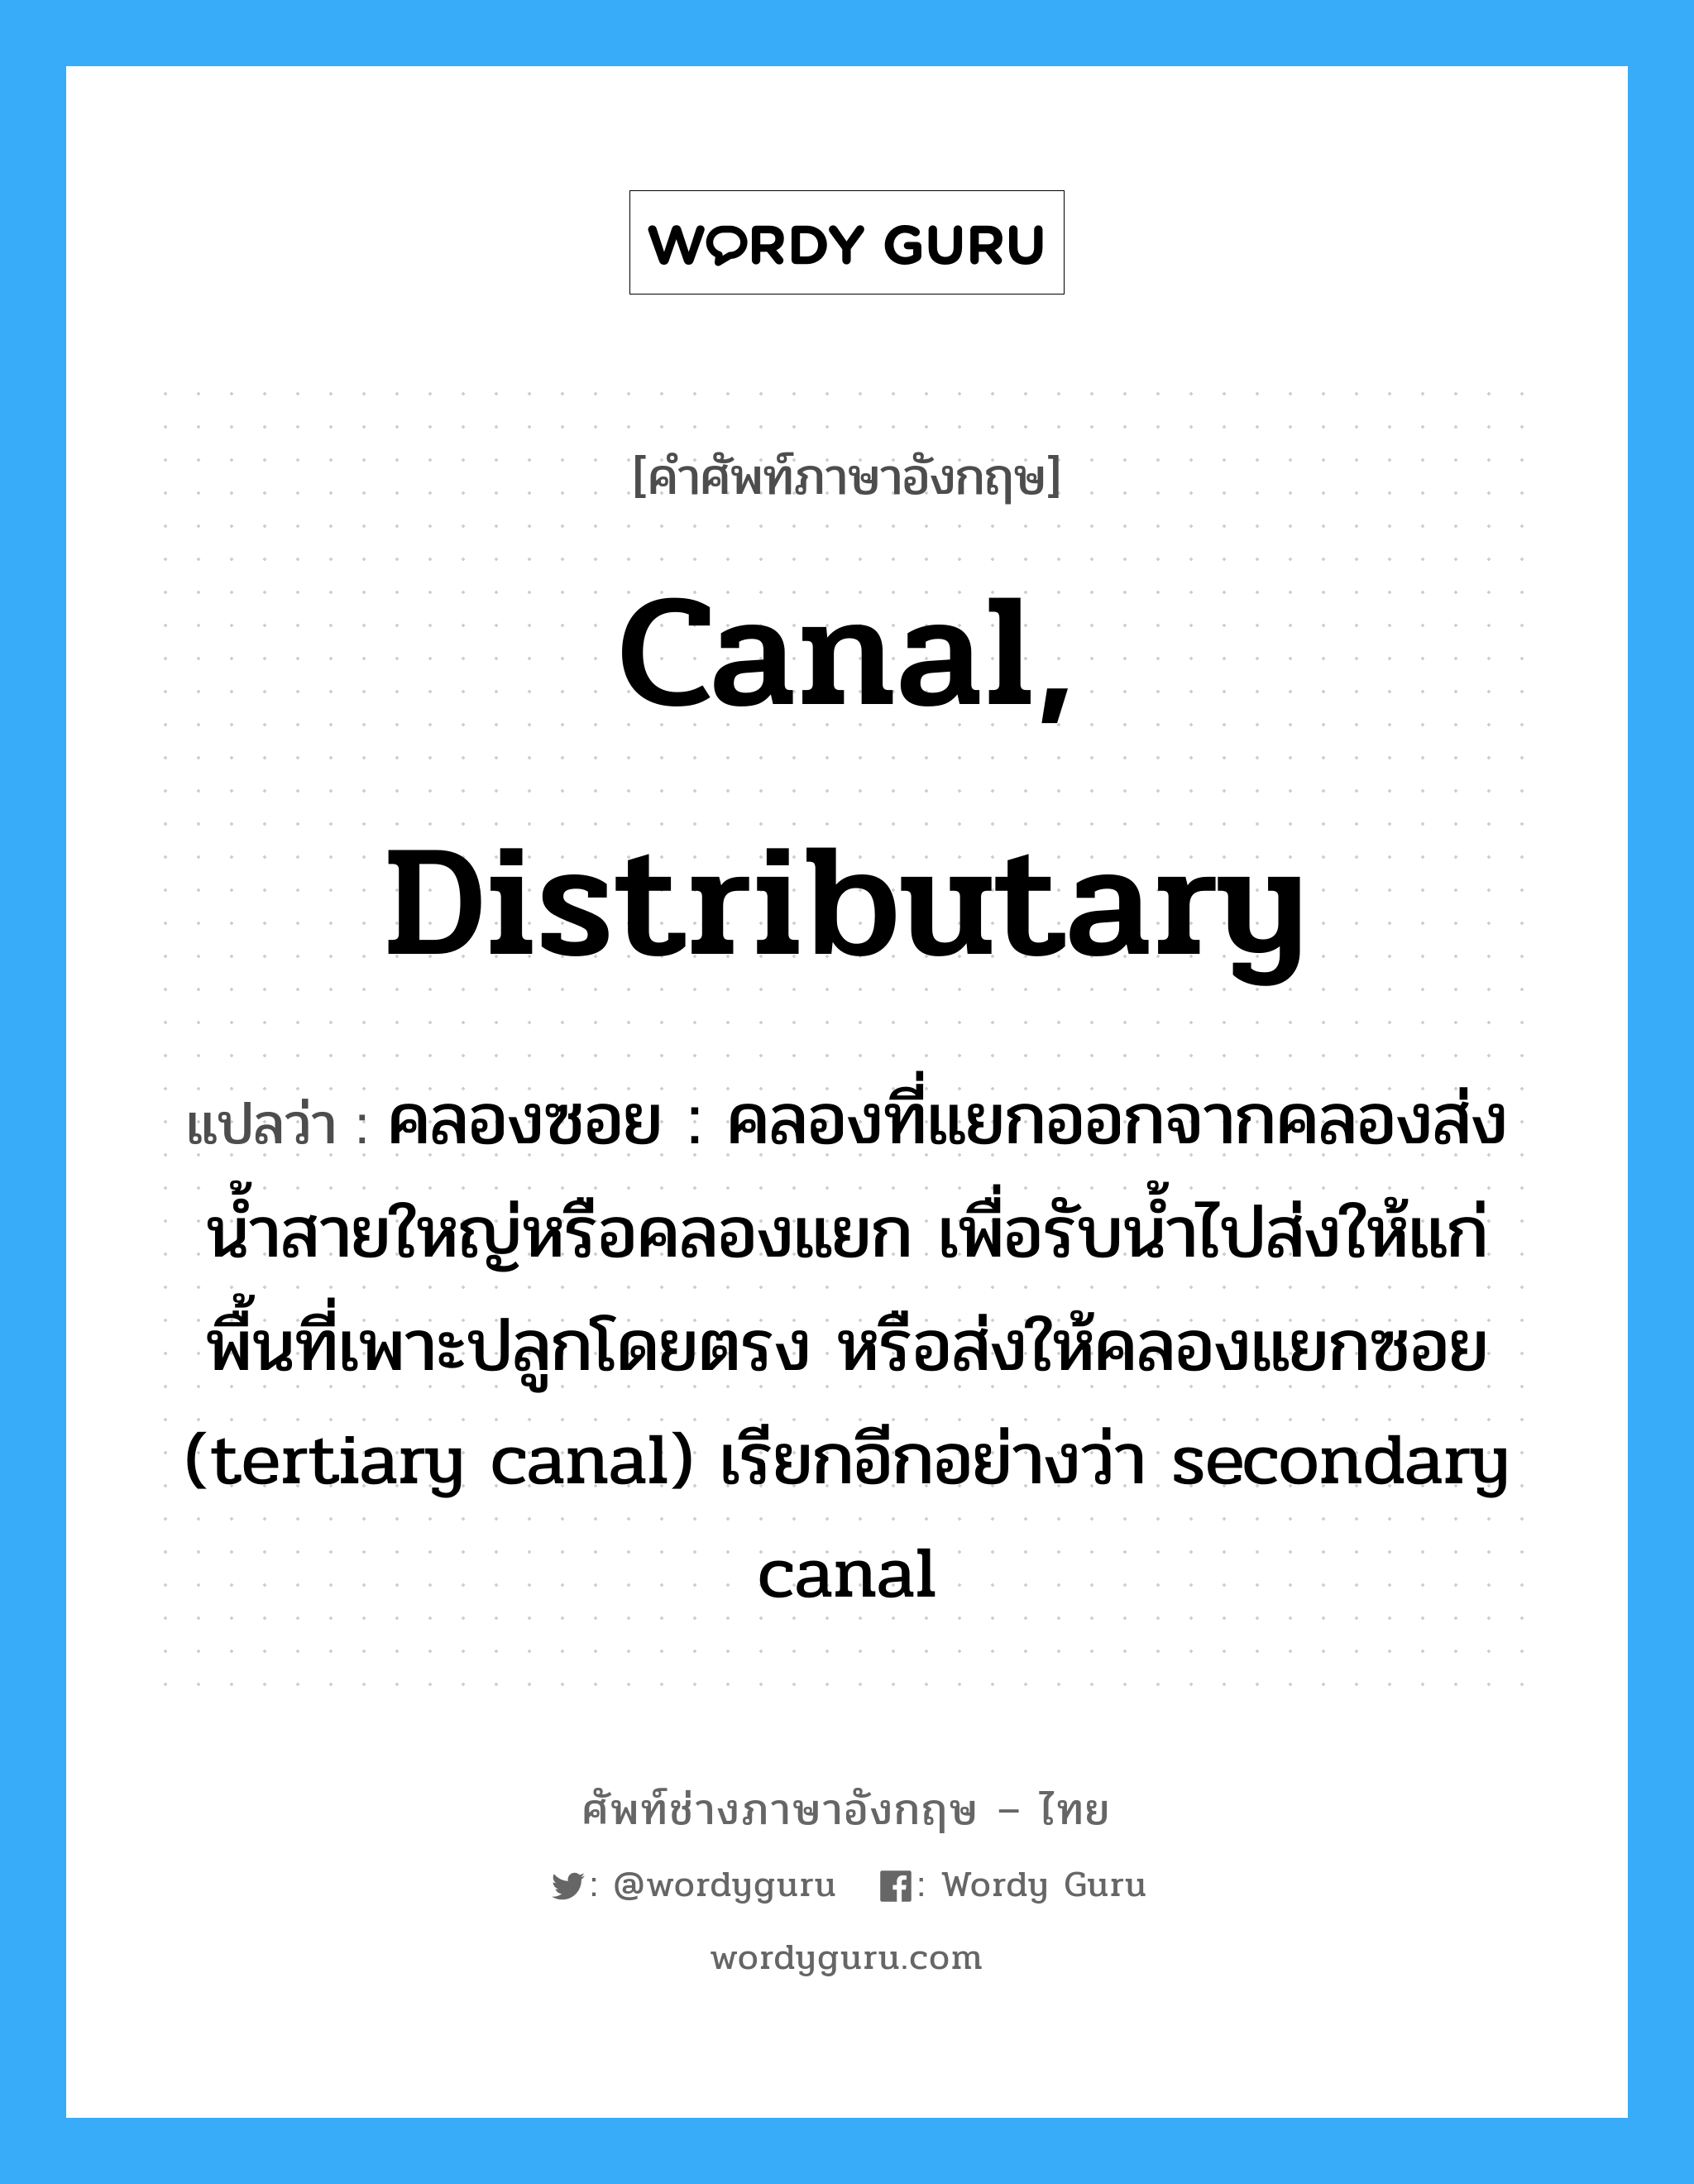 คลองซอย : คลองที่แยกออกจากคลองส่งน้ำสายใหญ่หรือคลองแยก เพื่อรับน้ำไปส่งให้แก่พื้นที่เพาะปลูกโดยตรง หรือส่งให้คลองแยกซอย (tertiary canal) เรียกอีกอย่างว่า secondary canal ภาษาอังกฤษ?, คำศัพท์ช่างภาษาอังกฤษ - ไทย คลองซอย : คลองที่แยกออกจากคลองส่งน้ำสายใหญ่หรือคลองแยก เพื่อรับน้ำไปส่งให้แก่พื้นที่เพาะปลูกโดยตรง หรือส่งให้คลองแยกซอย (tertiary canal) เรียกอีกอย่างว่า secondary canal คำศัพท์ภาษาอังกฤษ คลองซอย : คลองที่แยกออกจากคลองส่งน้ำสายใหญ่หรือคลองแยก เพื่อรับน้ำไปส่งให้แก่พื้นที่เพาะปลูกโดยตรง หรือส่งให้คลองแยกซอย (tertiary canal) เรียกอีกอย่างว่า secondary canal แปลว่า canal, distributary